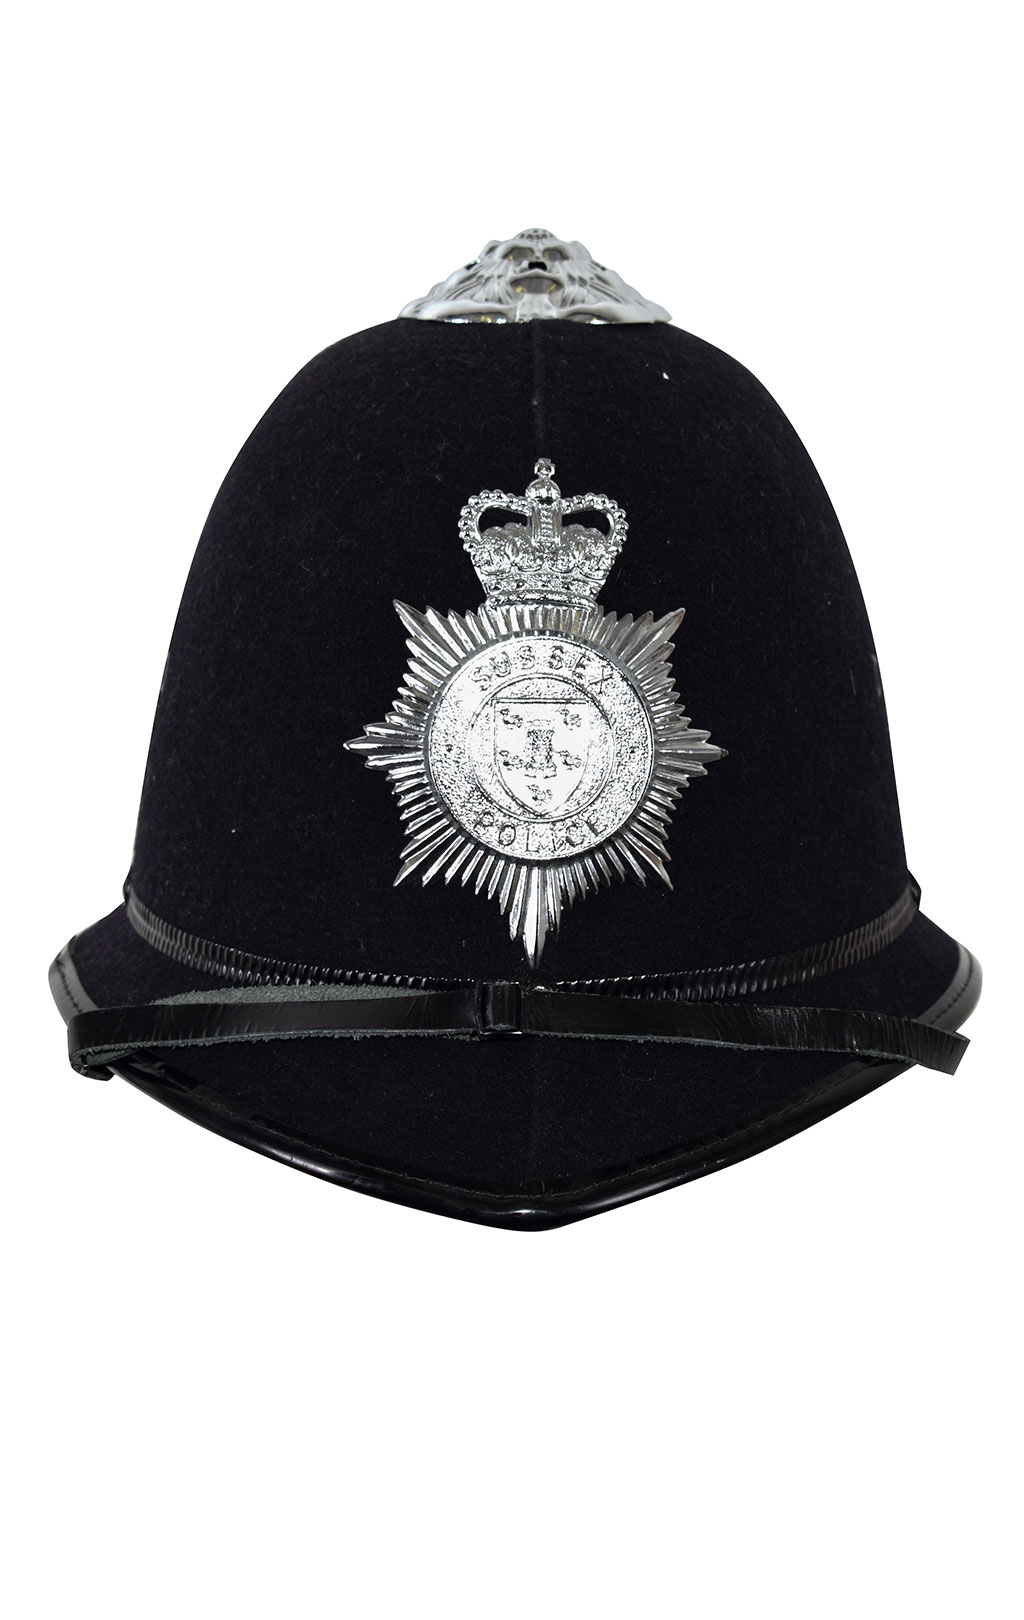 Шлем полицейский SUSSEX б/у Англия